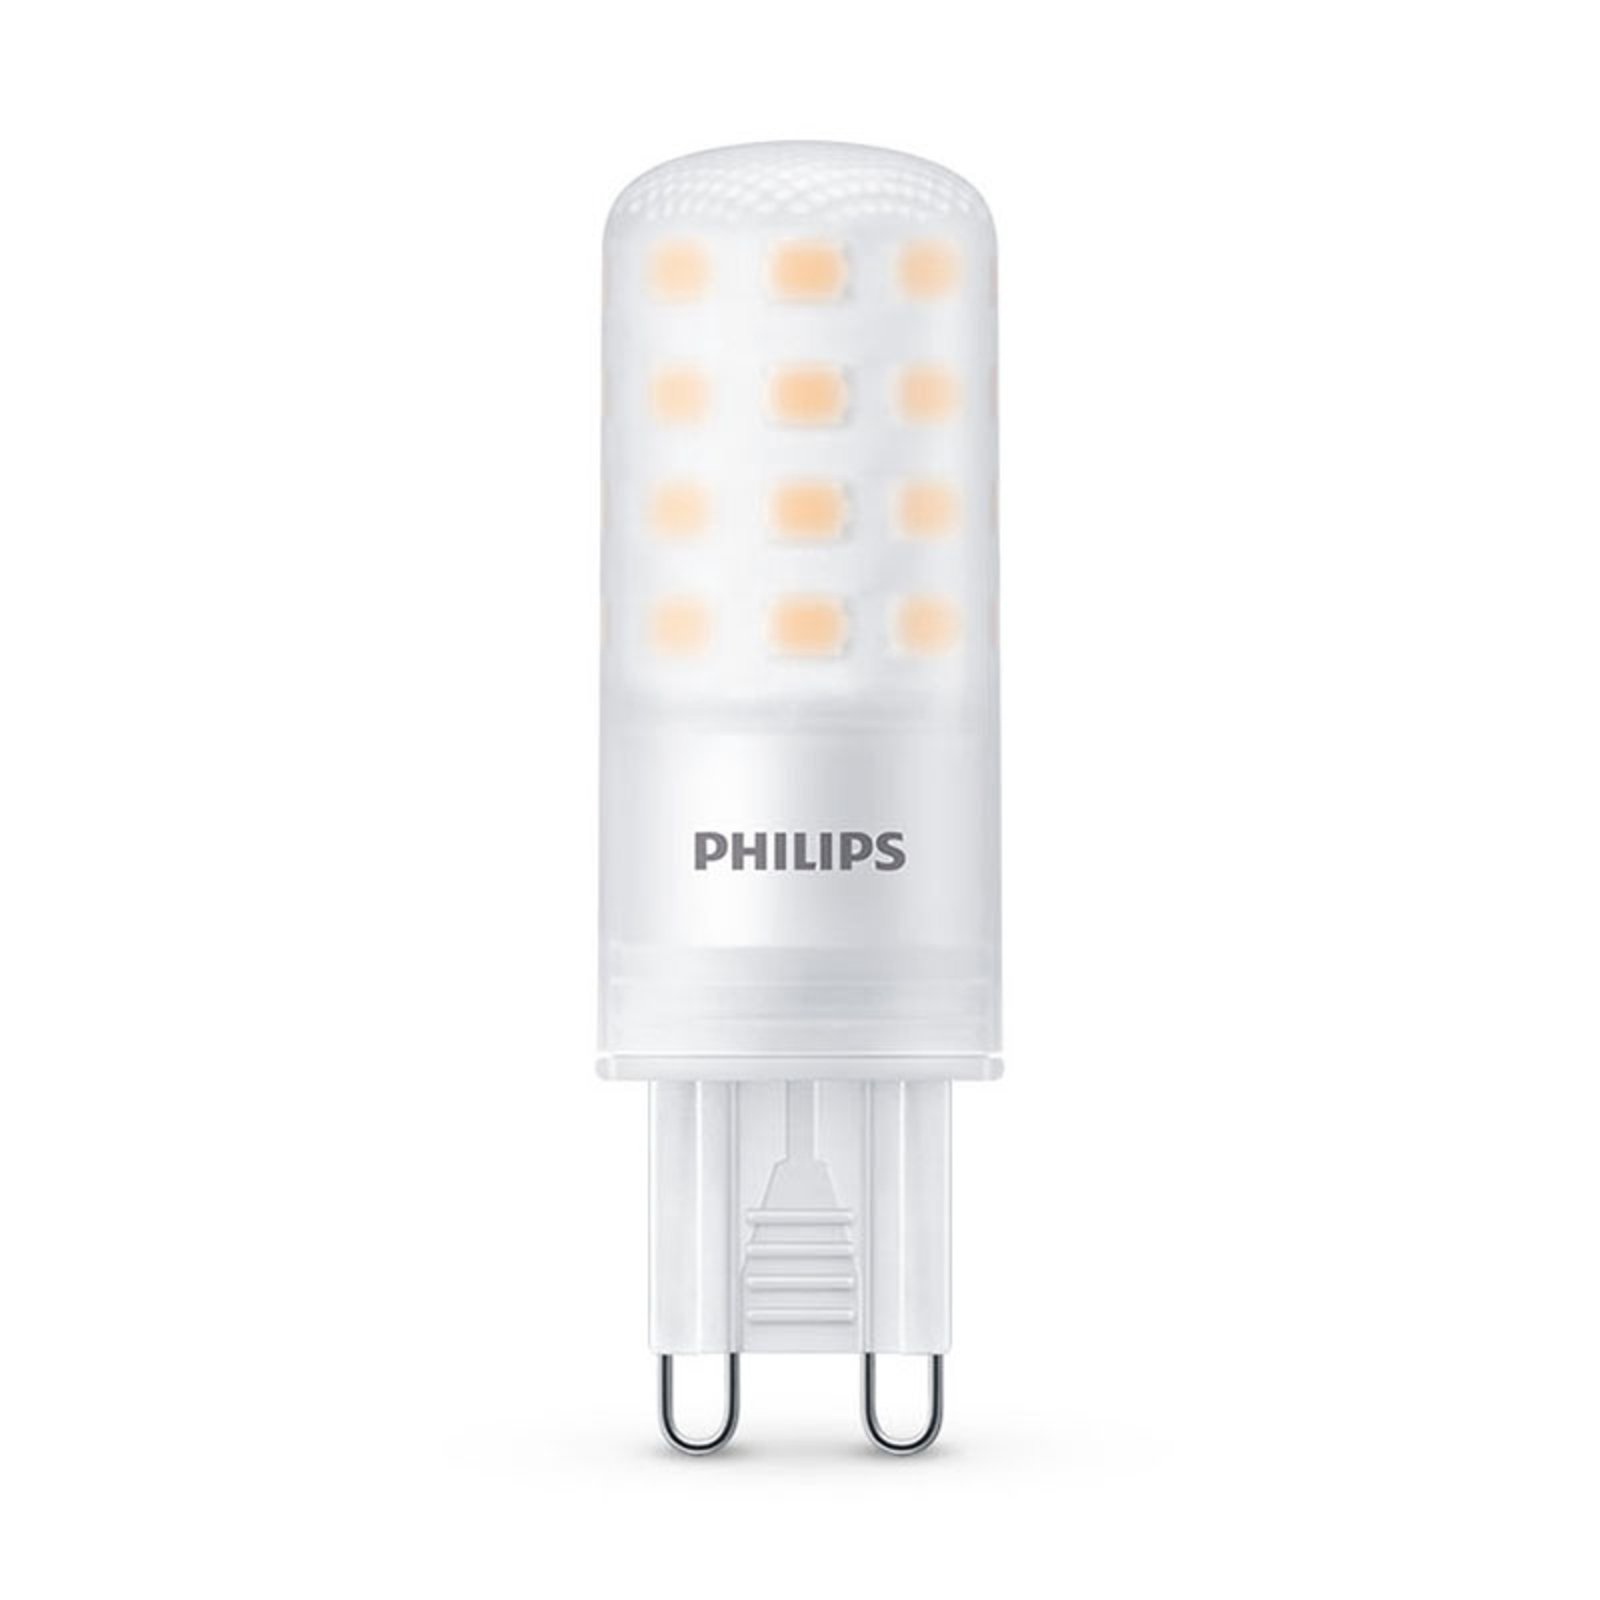 Philips LED stiftamp G9 4W 2.700K mat dimbaar